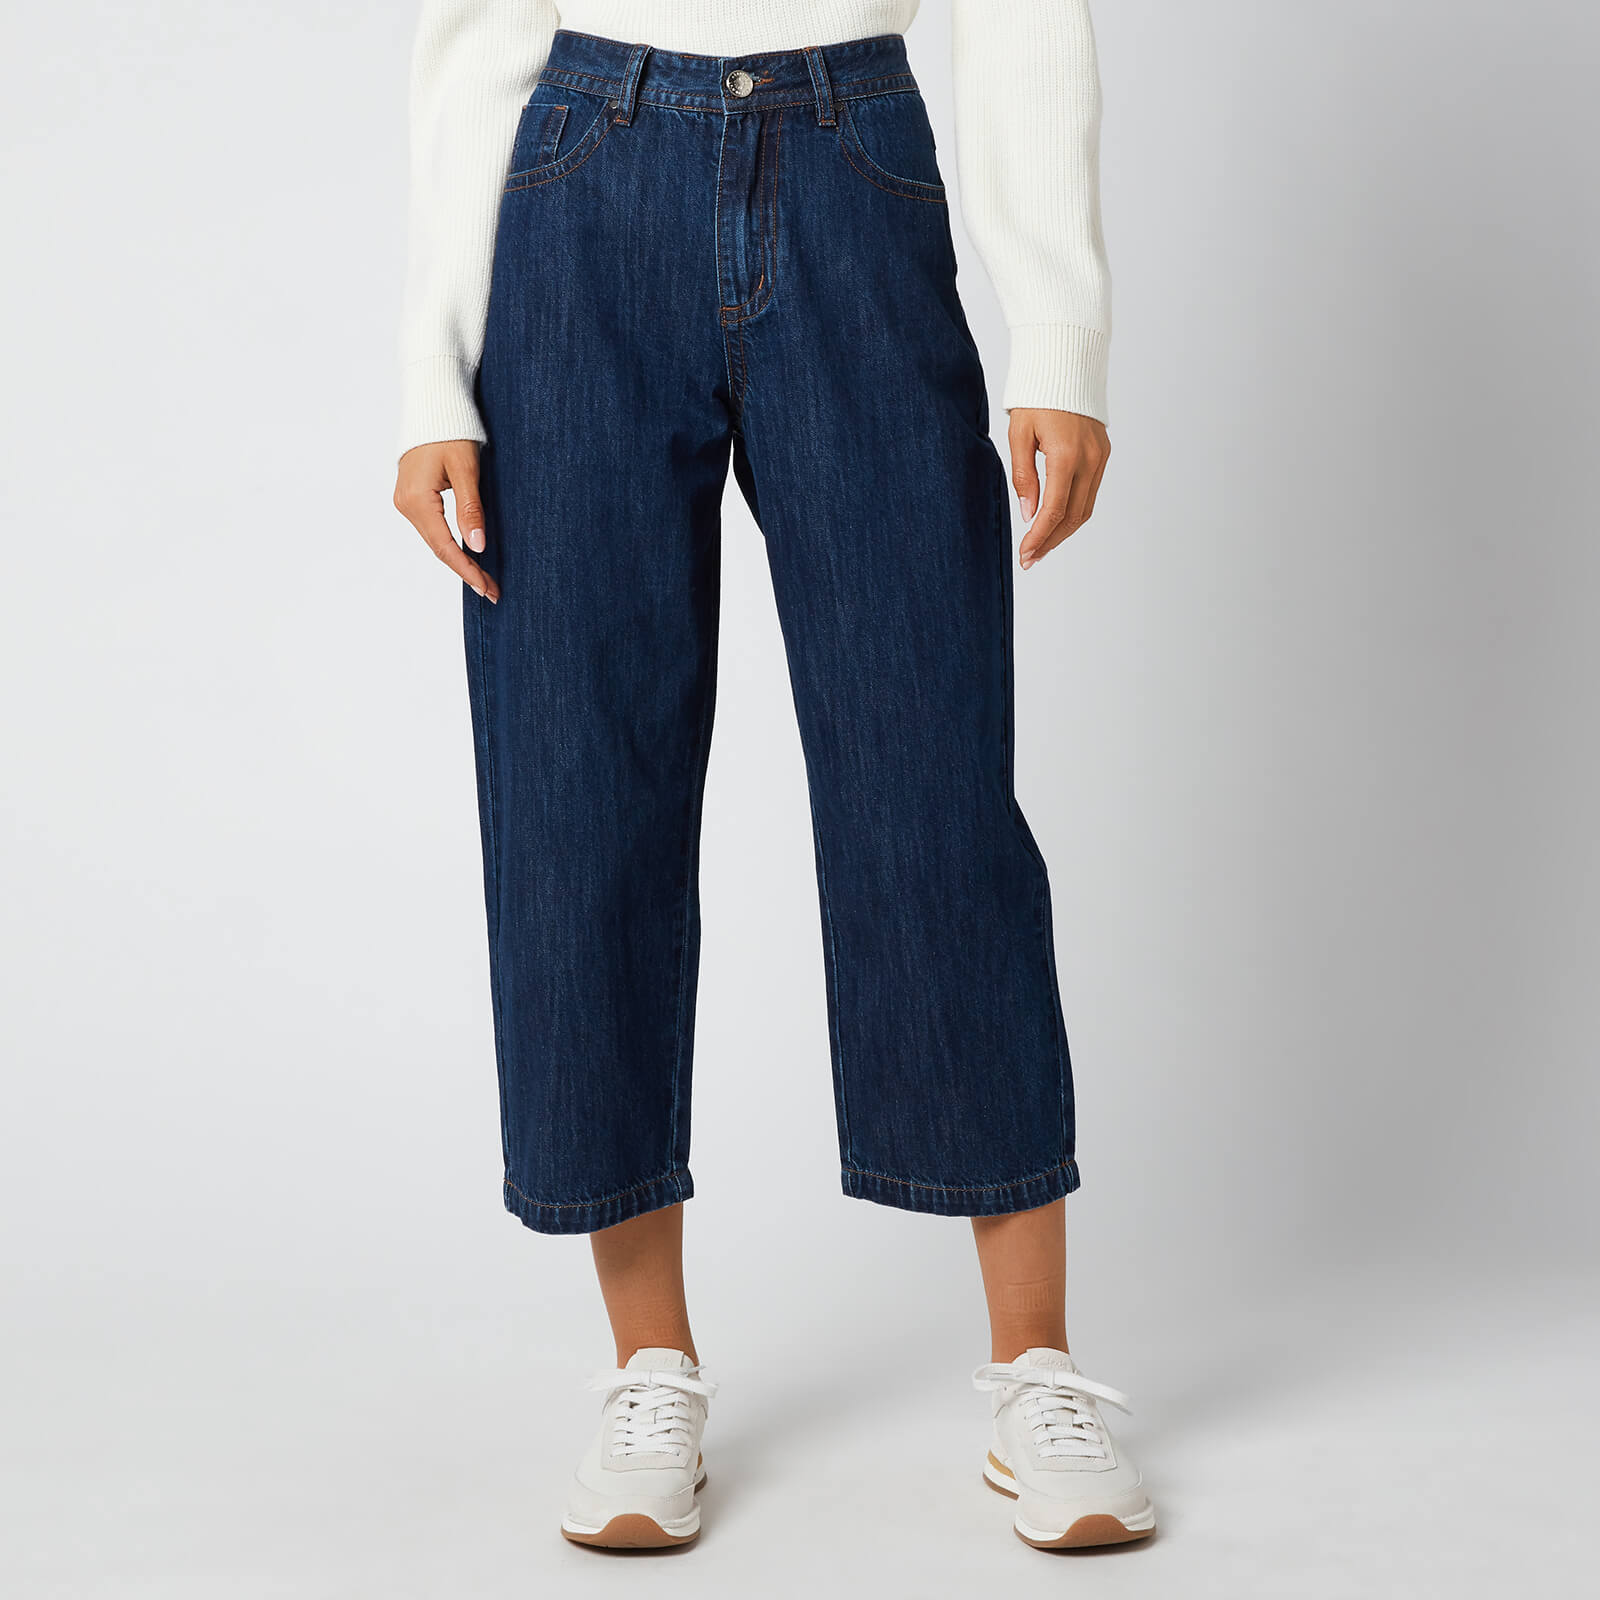 L.F Markey Women's Big Boys Jeans - Indigo - W25